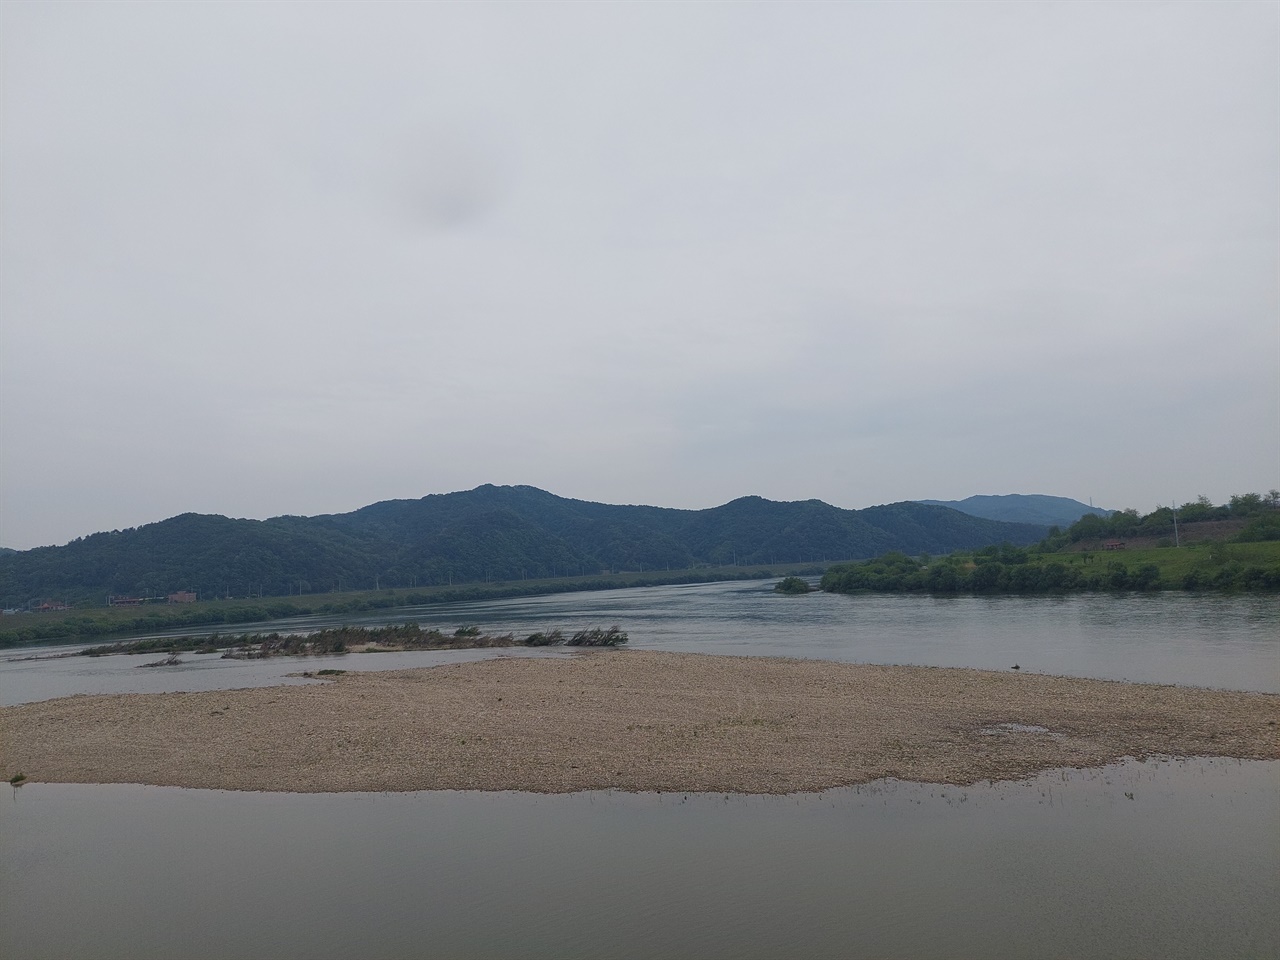 사진 왼쪽은 횡성 태기산에서 발원한 섬강, 위쪽은 태백산 검룡소에서 발원해서 영월, 충주를 거처 흘러온 남한강, 두 강이 합류해서 오른쪽으로 흘러가는데 이 강을 여강이라고 한다. 